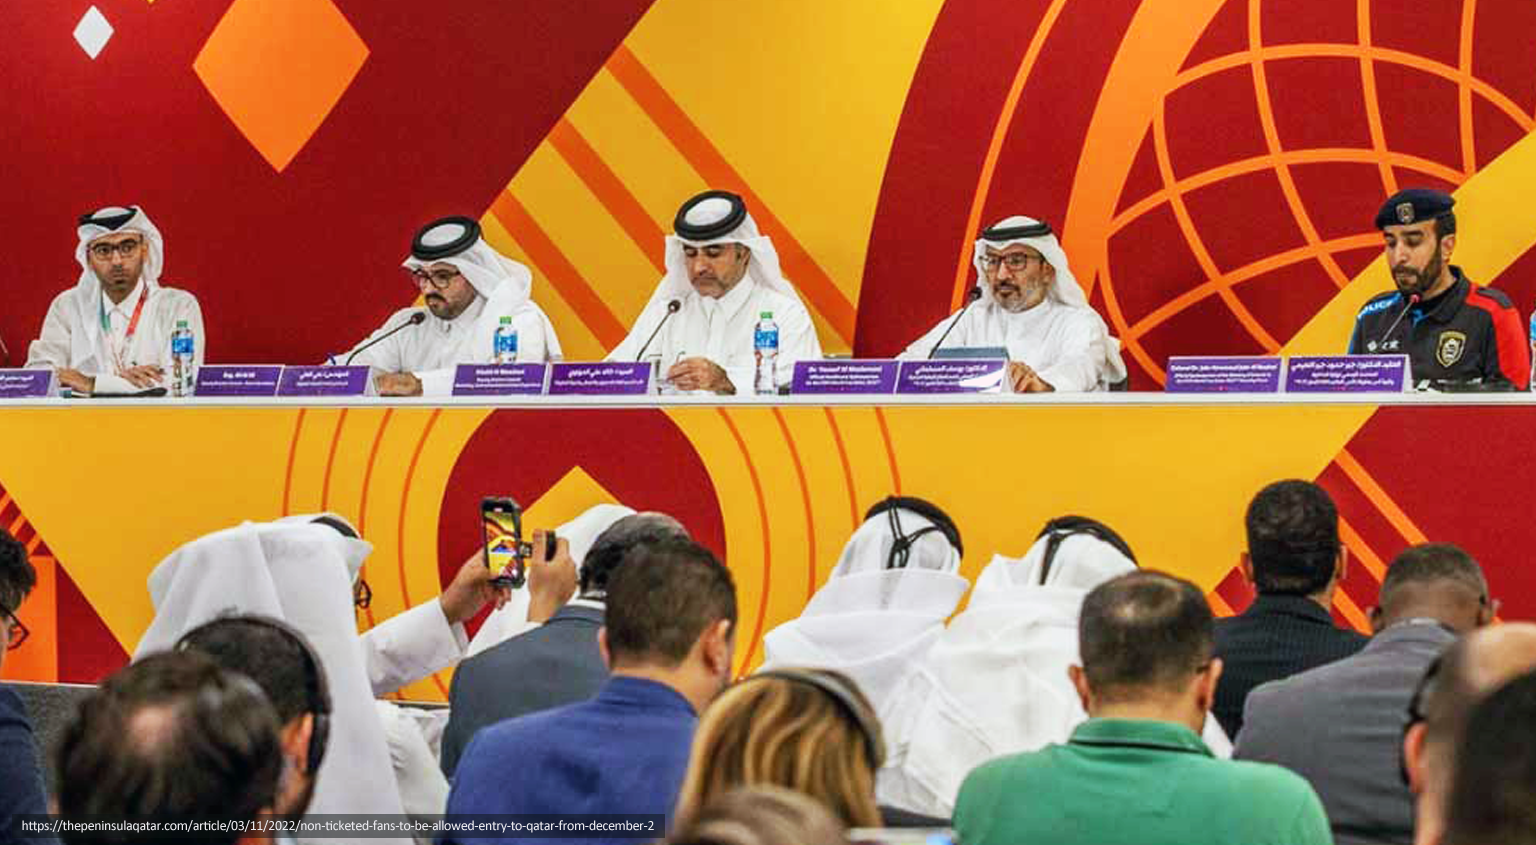 Einreise in Katar ohne WM-Ticket